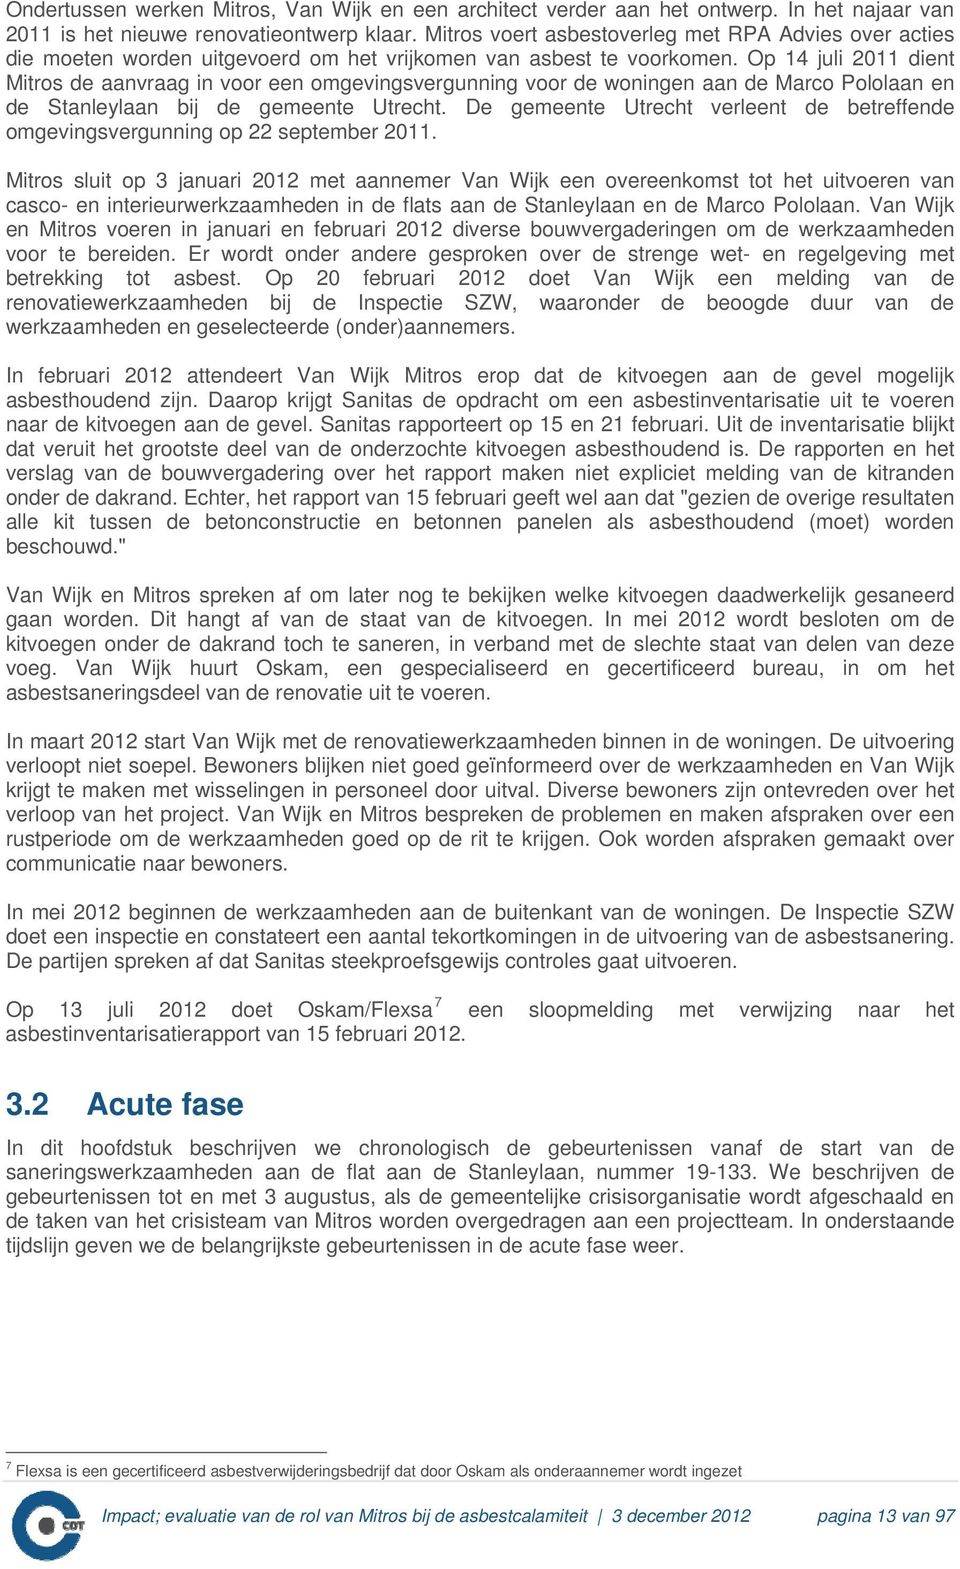 Op 14 juli 2011 dient Mitros de aanvraag in voor een omgevingsvergunning voor de woningen aan de Marco Pololaan en de Stanleylaan bij de gemeente Utrecht.